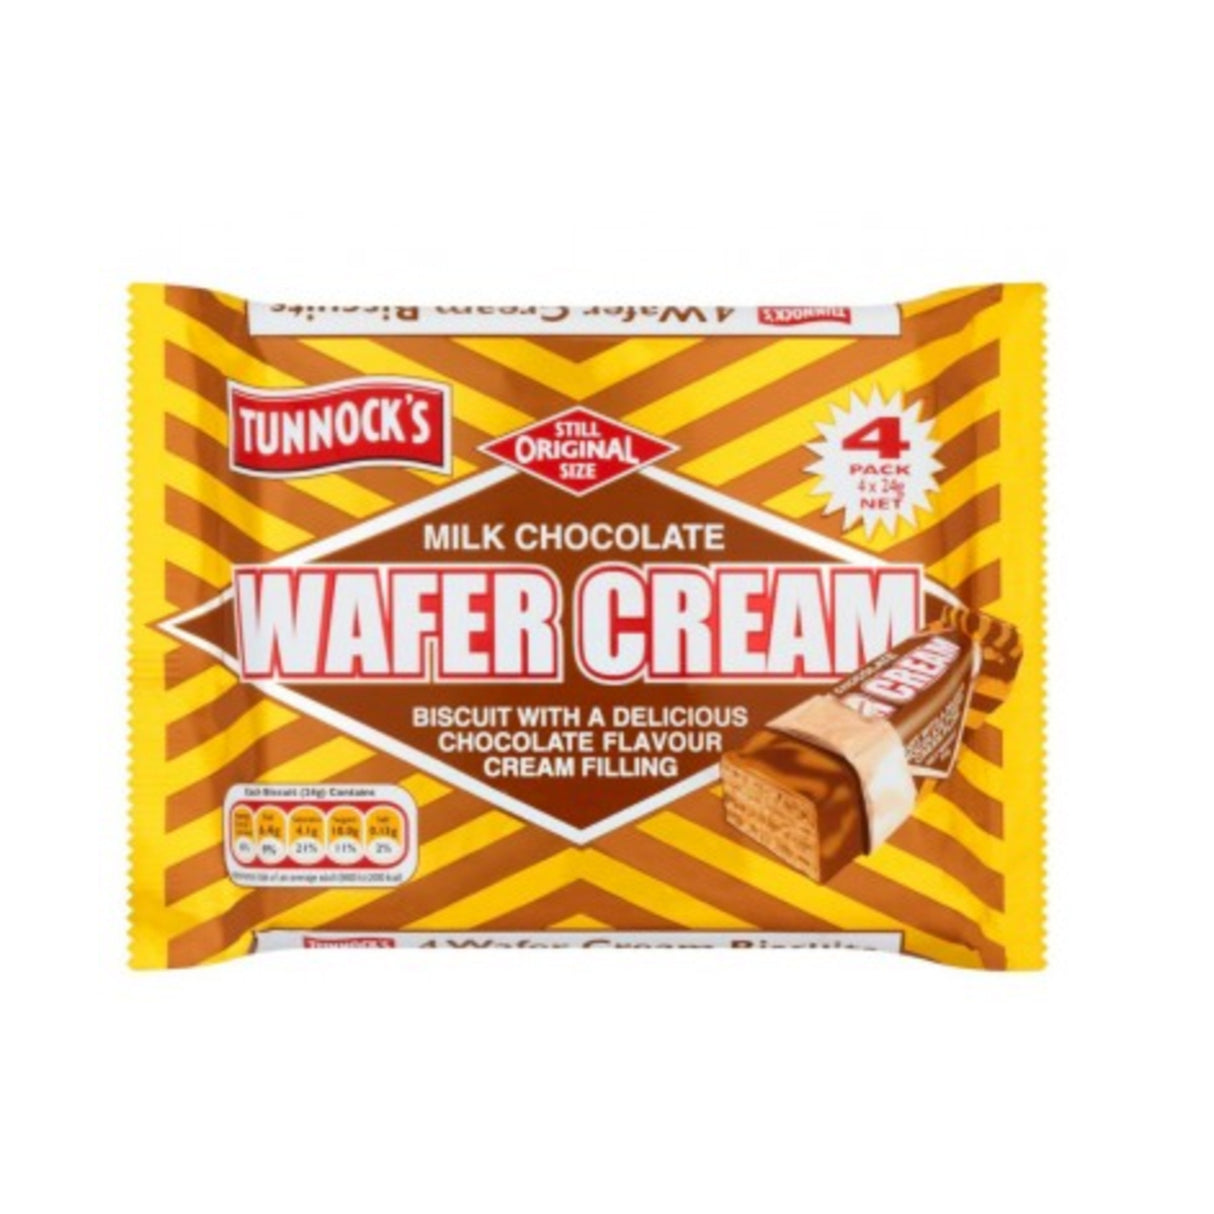 Tunnock's Wafer Cream Milk Chocolate 4 Pack 24g